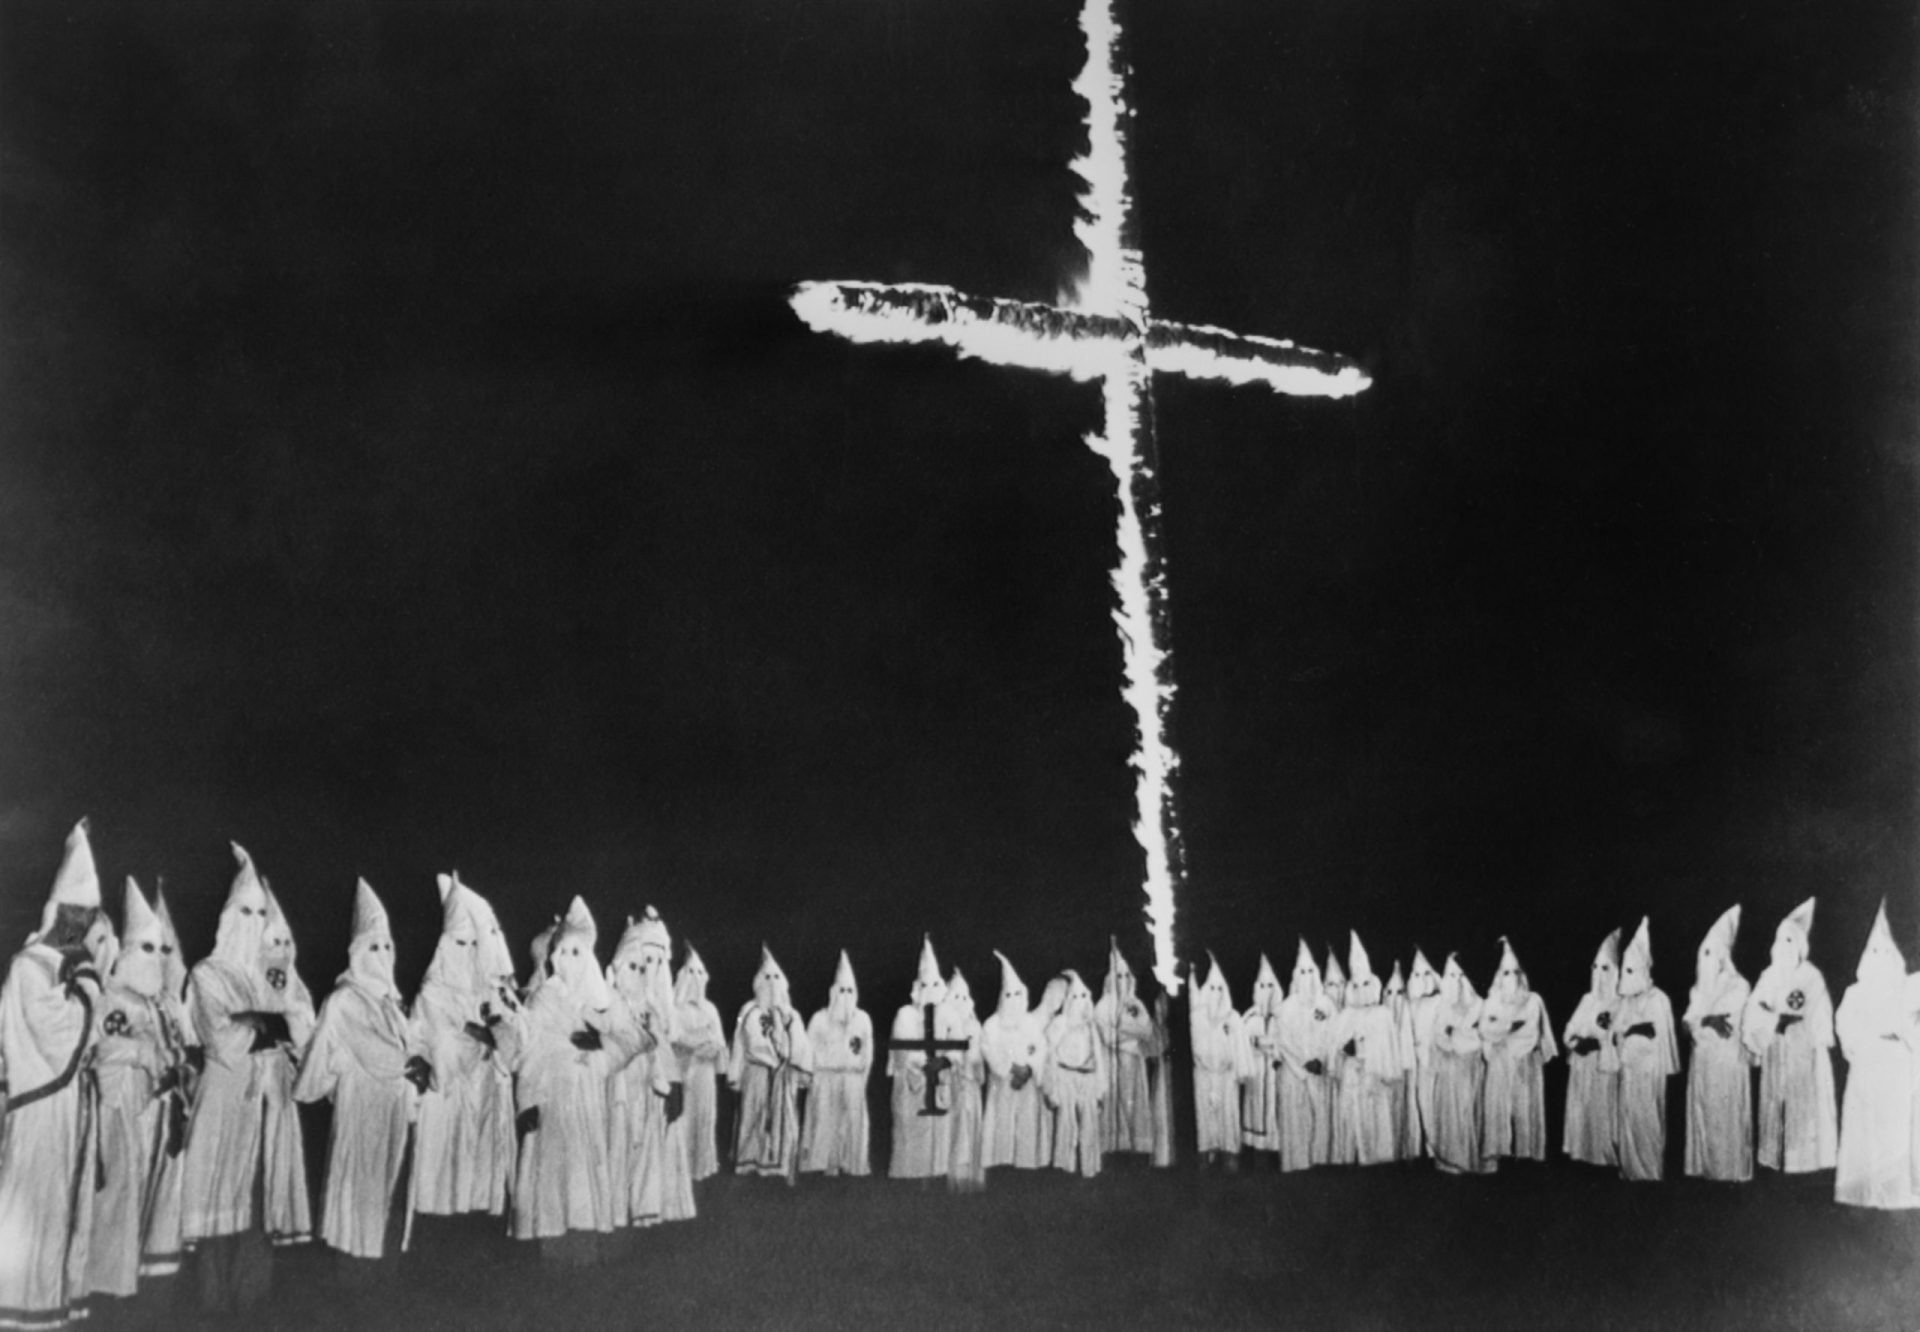 Anonymous revelam informações sobre membros do Ku Klux Klan